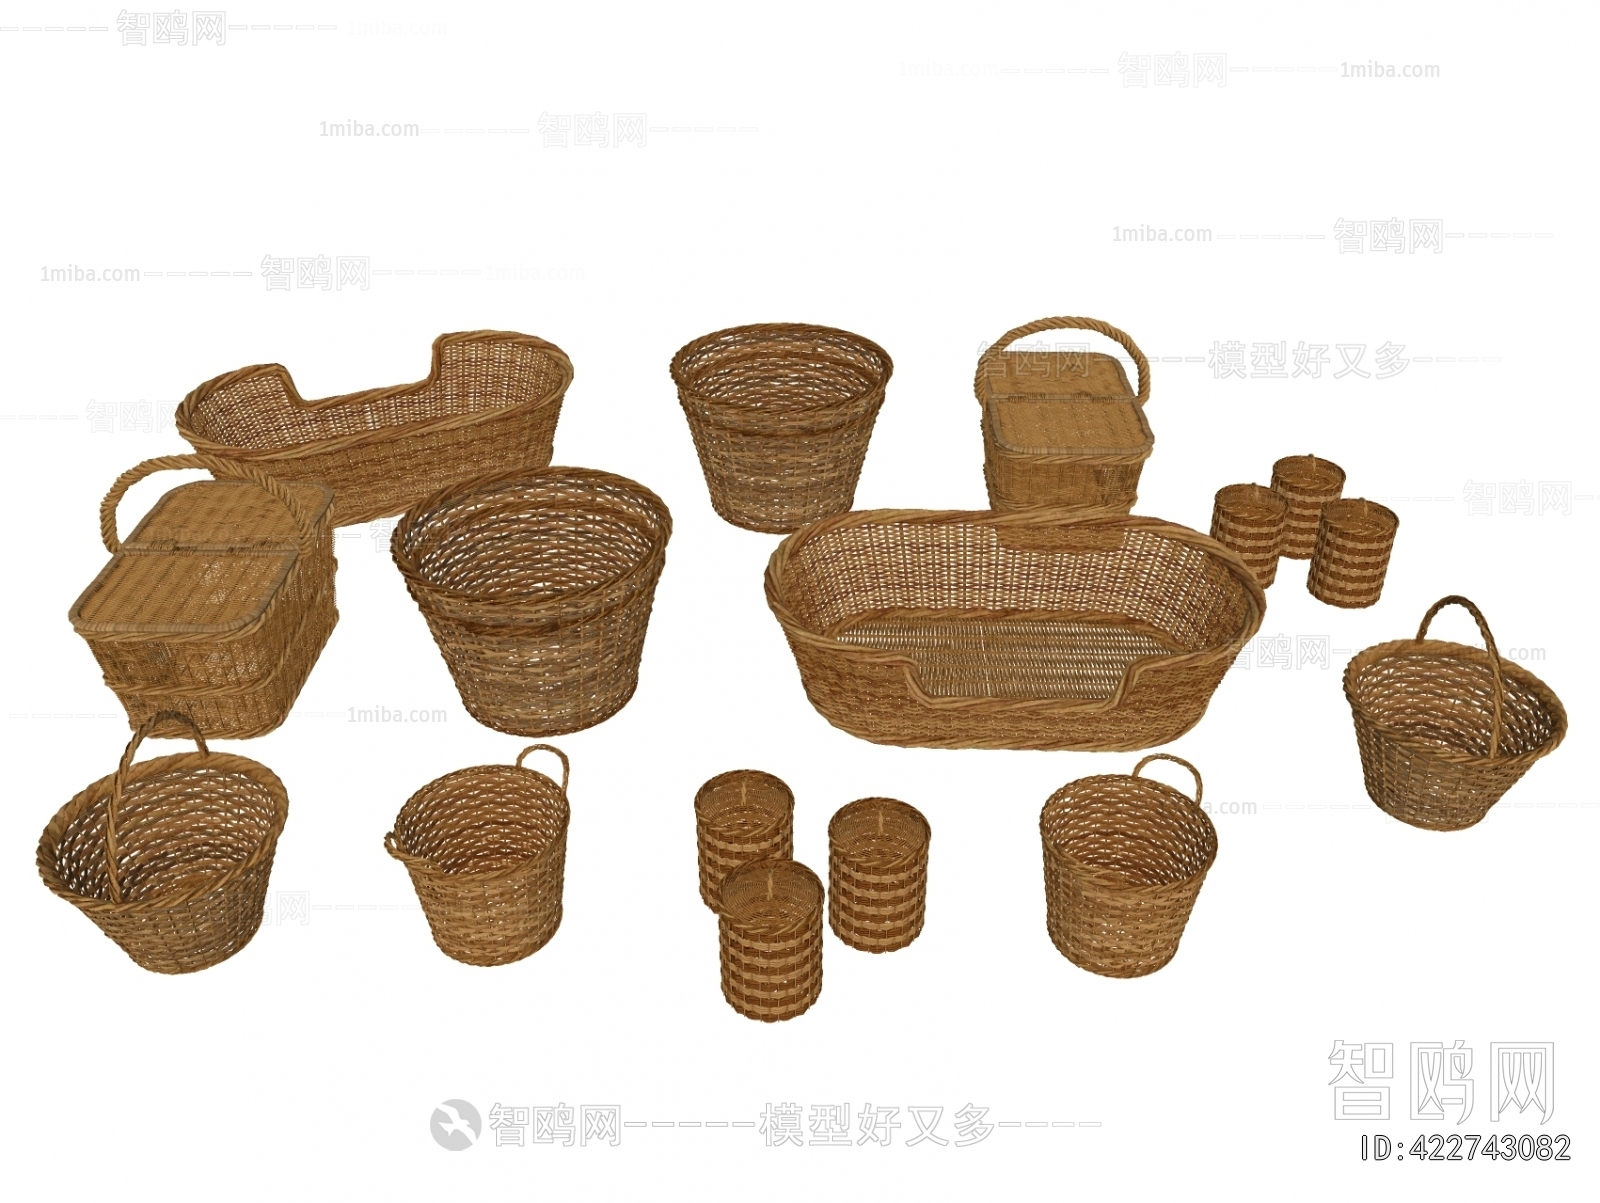 中式竹编篓筐竹篓3D模型下载